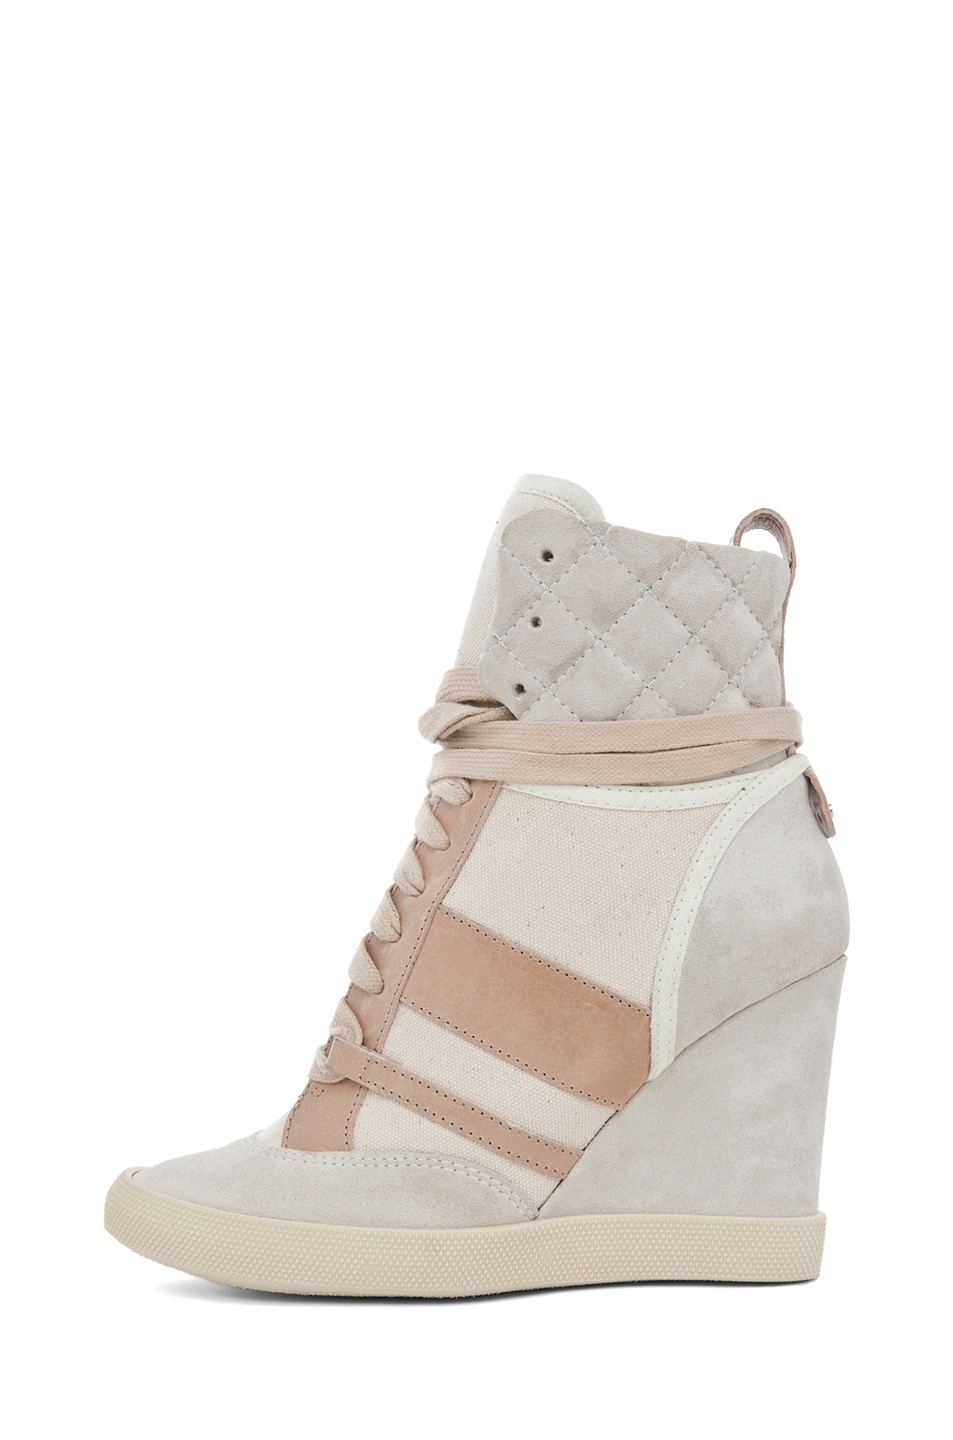 Image 1 of Chloe Kasia Suede & Canvas Sneaker Wedge in Ivory